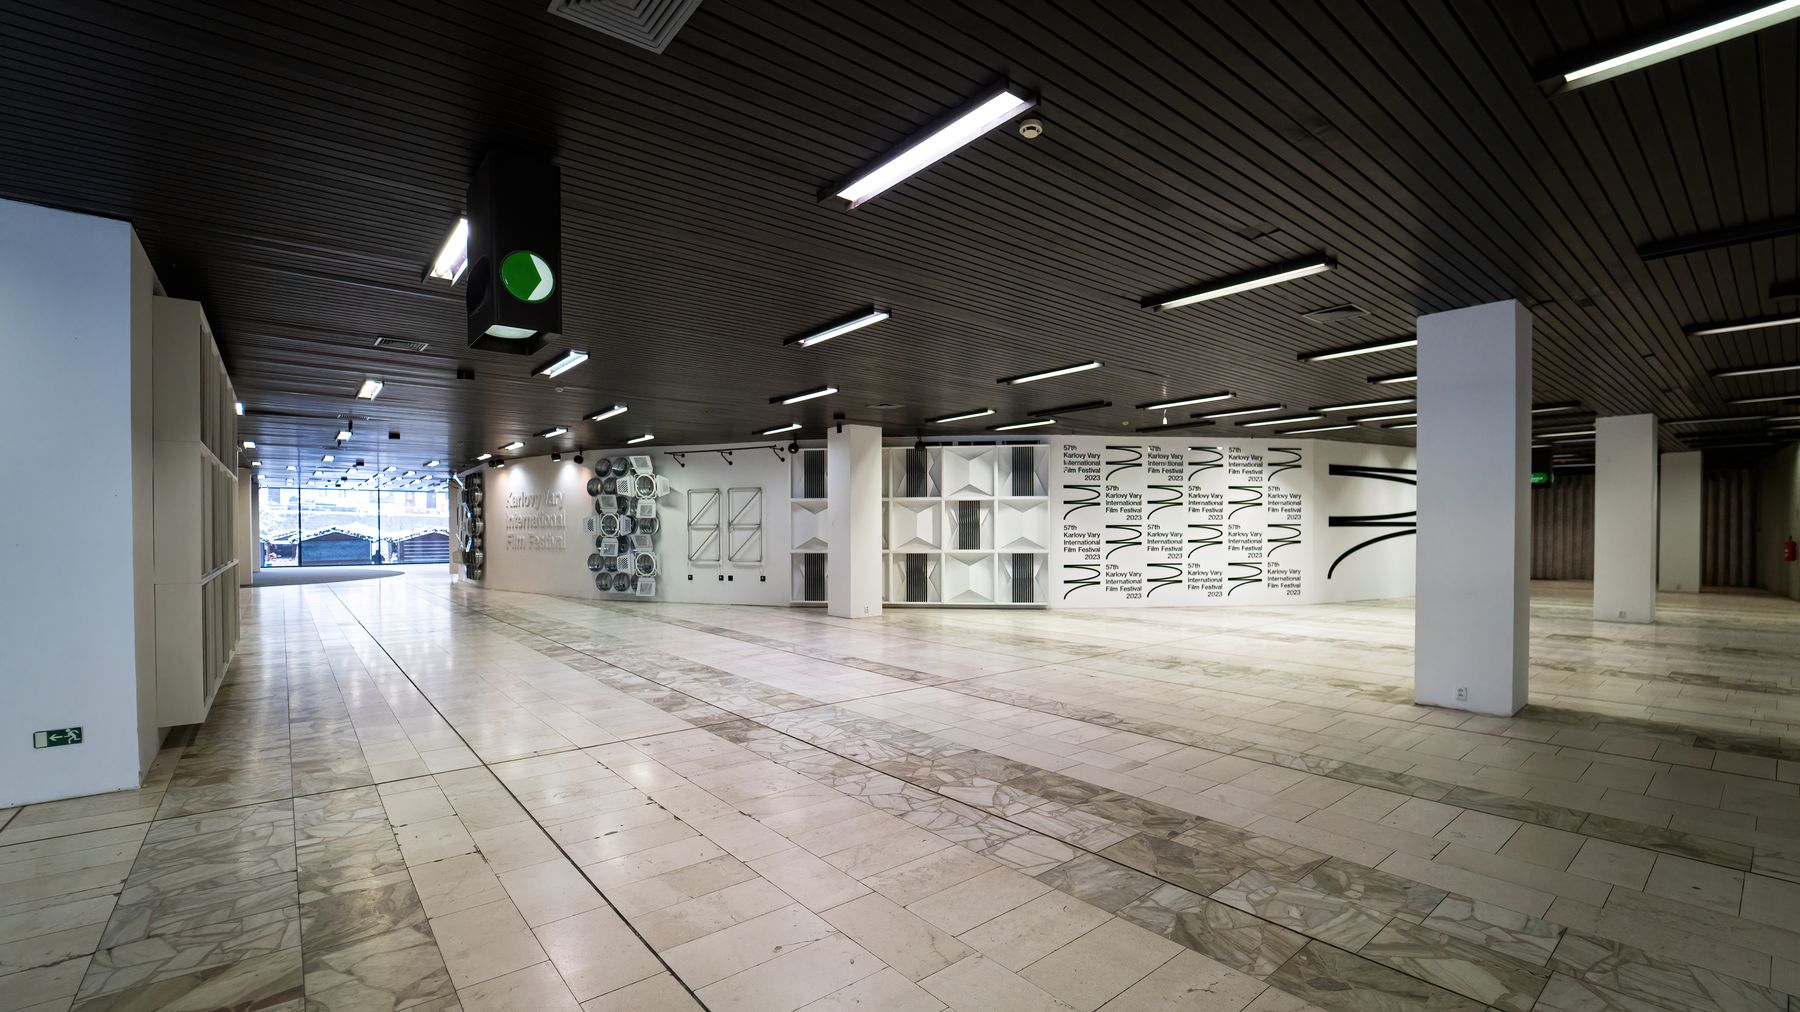 Eingangshalle & Foyer des Großen Saals